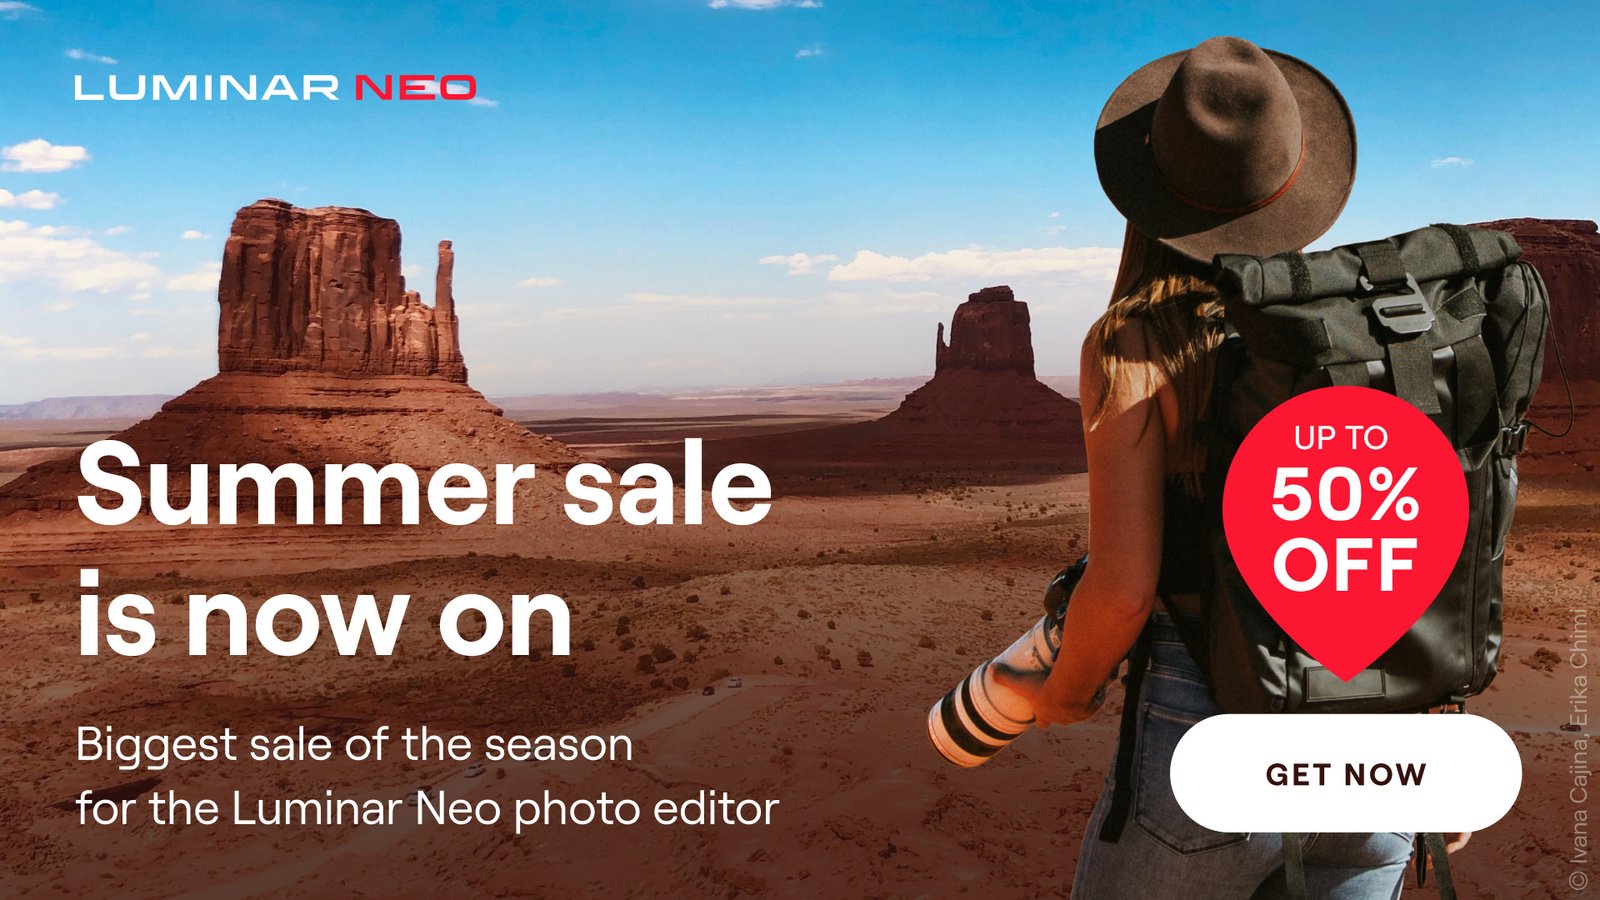 Luminar Neo Summer Sale: promo con sconti come se fosse il Black Friday! (coupon all’interno)